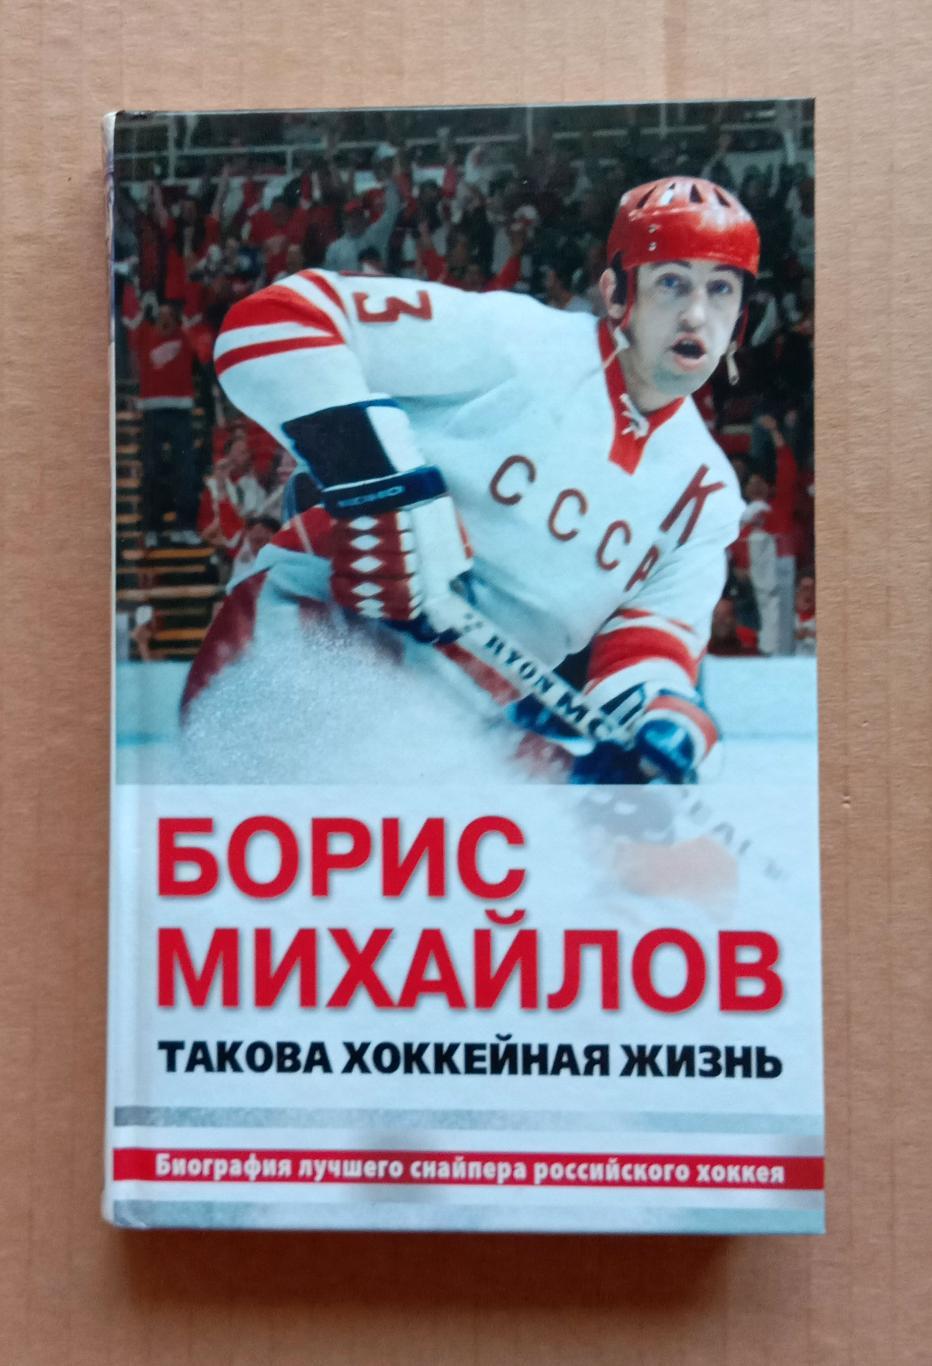 Борис Михайлов. Такова хоккейная жизнь